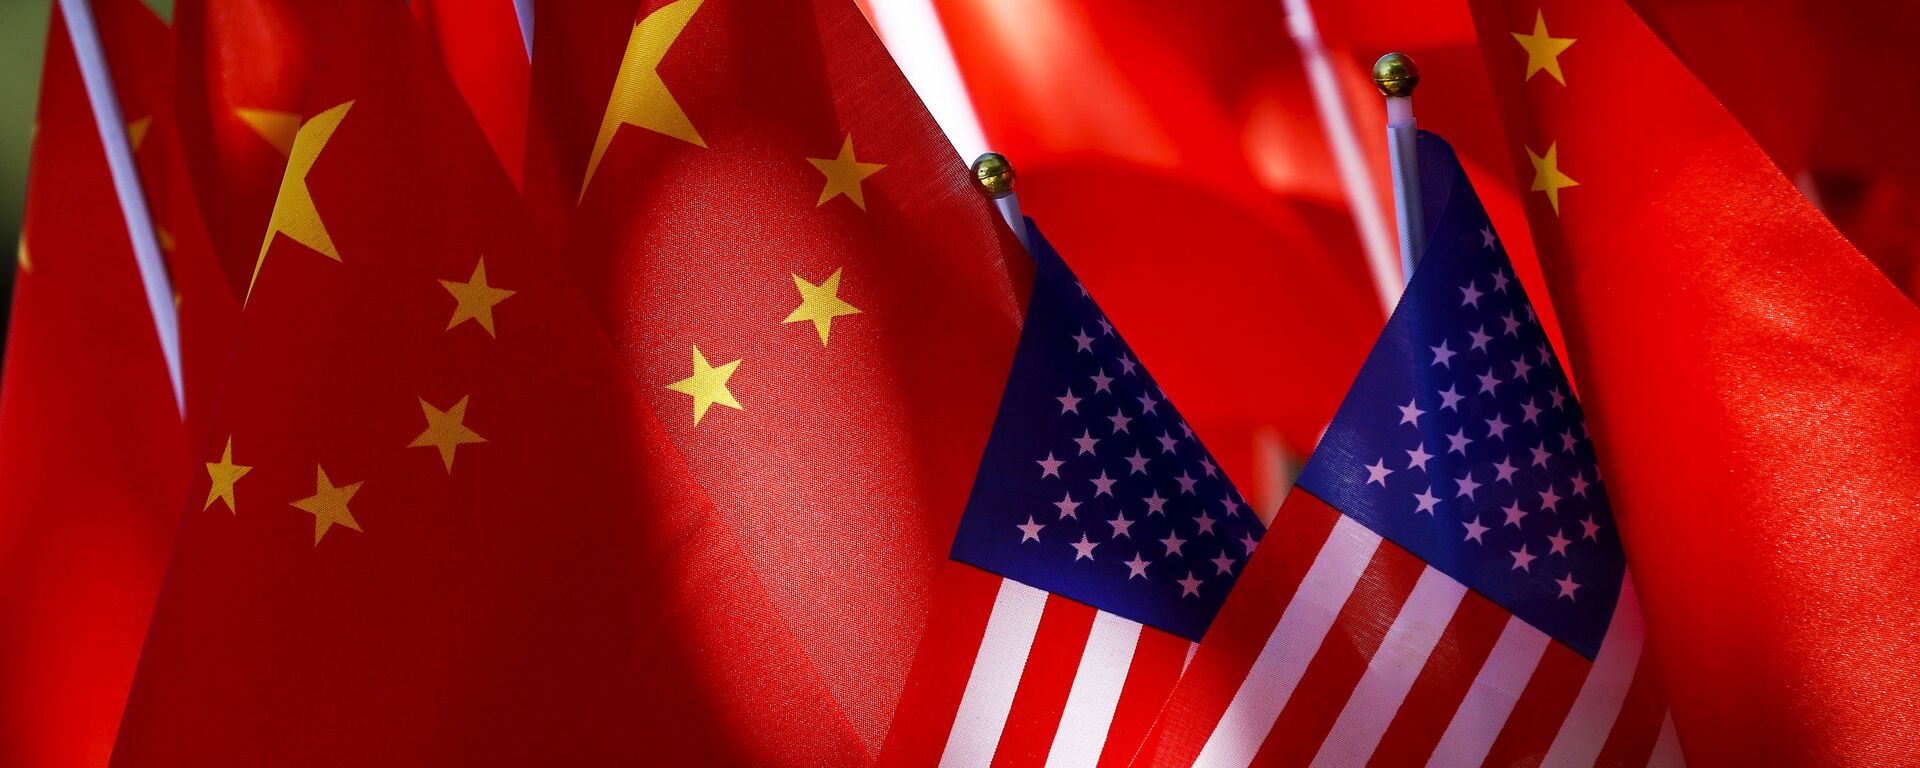 Banderas de EEUU y China - Sputnik Mundo, 1920, 17.09.2021